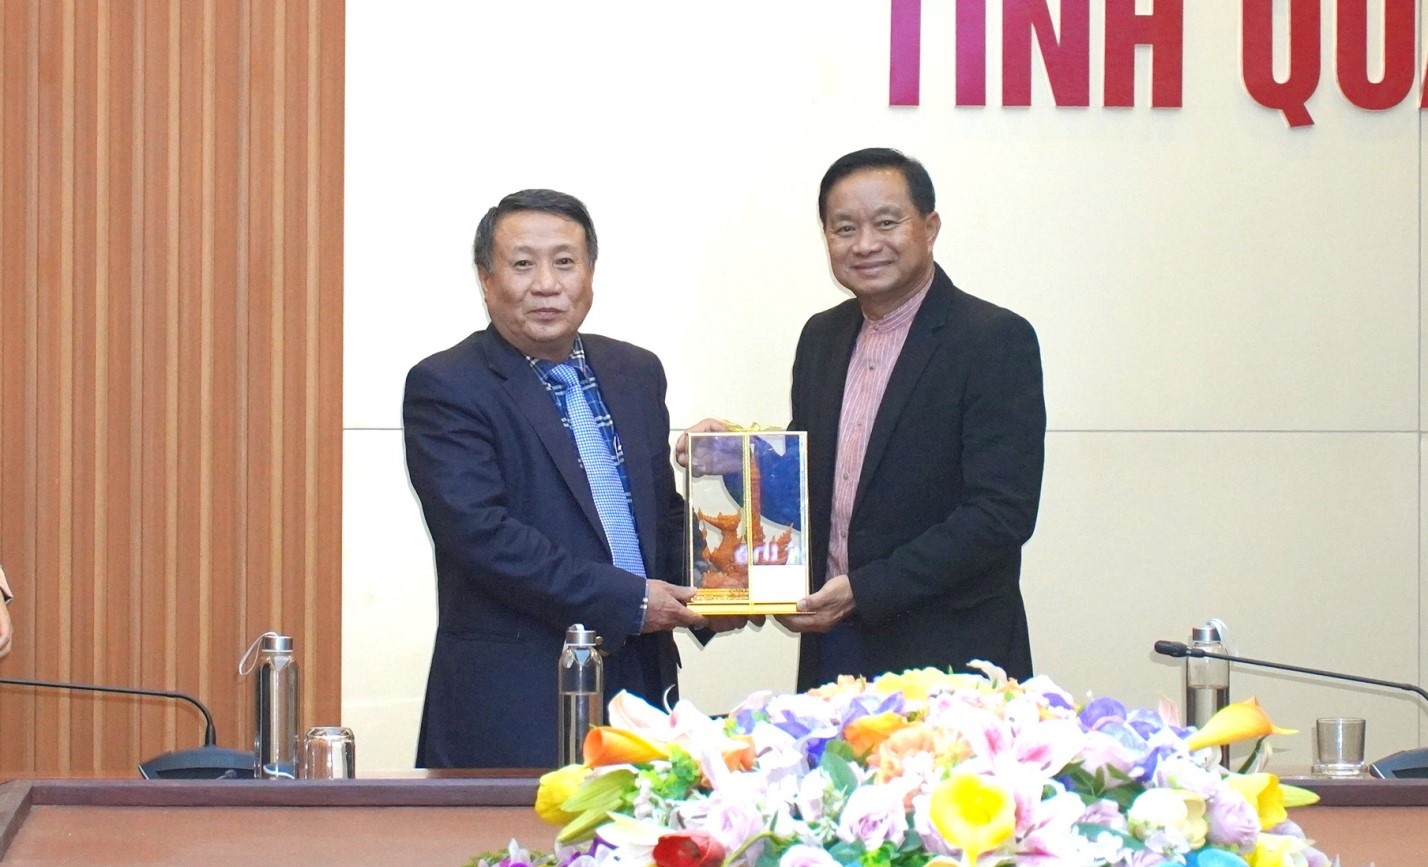 Tỉnh trưởng tỉnh Ubon Ratchathani Supasit Kocharoenyos tặng quà lưu niệm cho lãnh đạo UBND tỉnh Quảng Trị